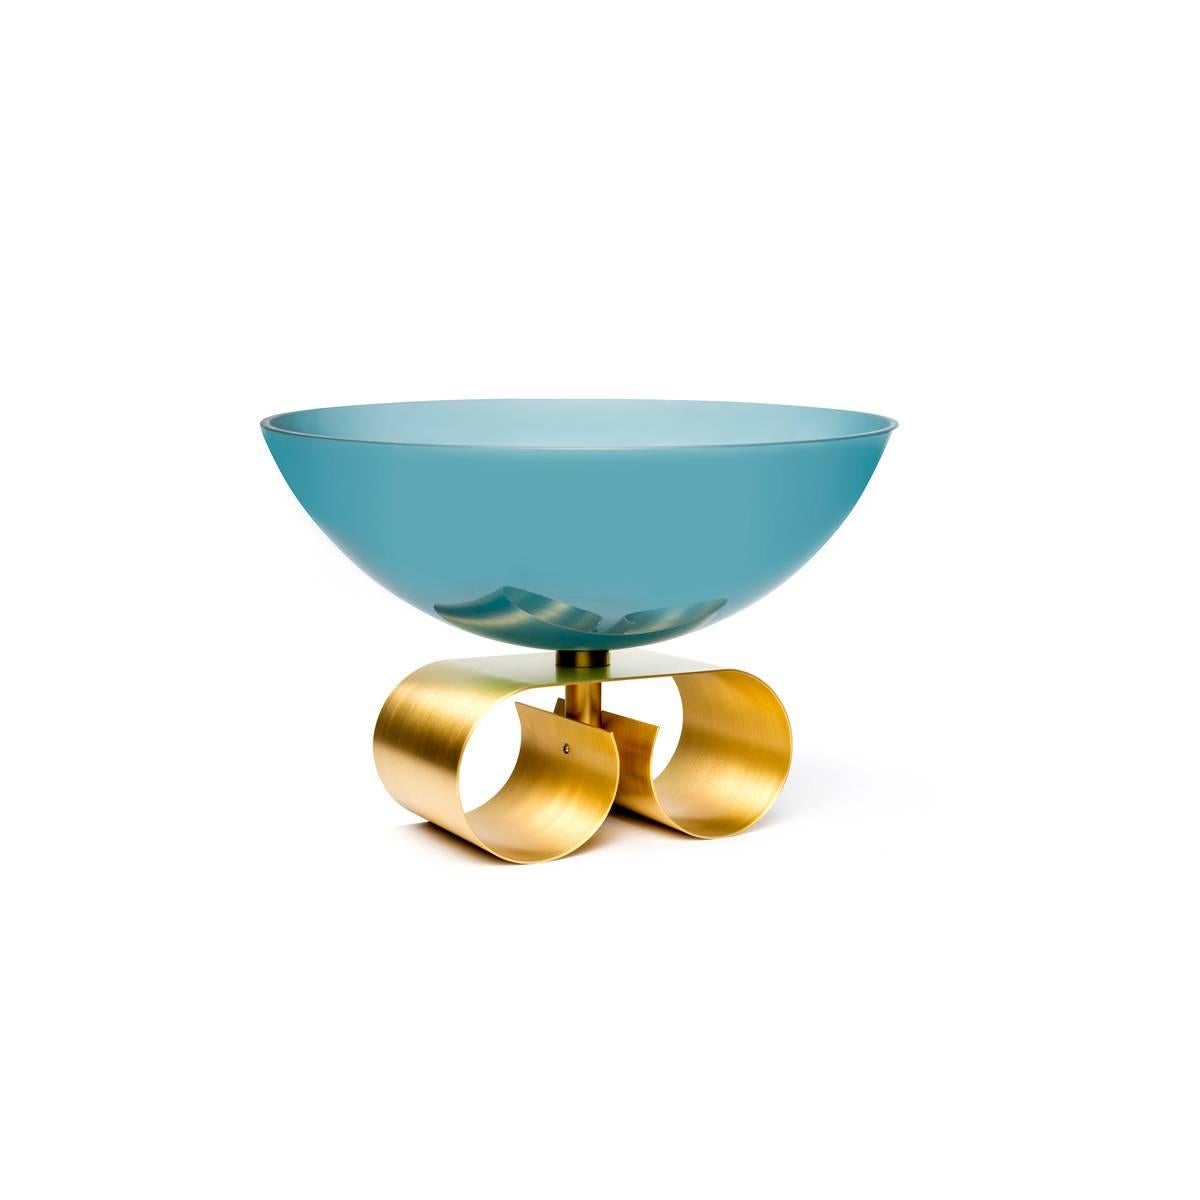 Große Glasschale mit Messingfuß, erhältlich in zwei Farbvarianten: blau oder hellblau.
Parure II, entworfen von Cristina Celestino, ist Teil von Dolce Vita, einer Kollektion, die in einem zeitgenössischen Ton den Charme des Italiens der 50er Jahre